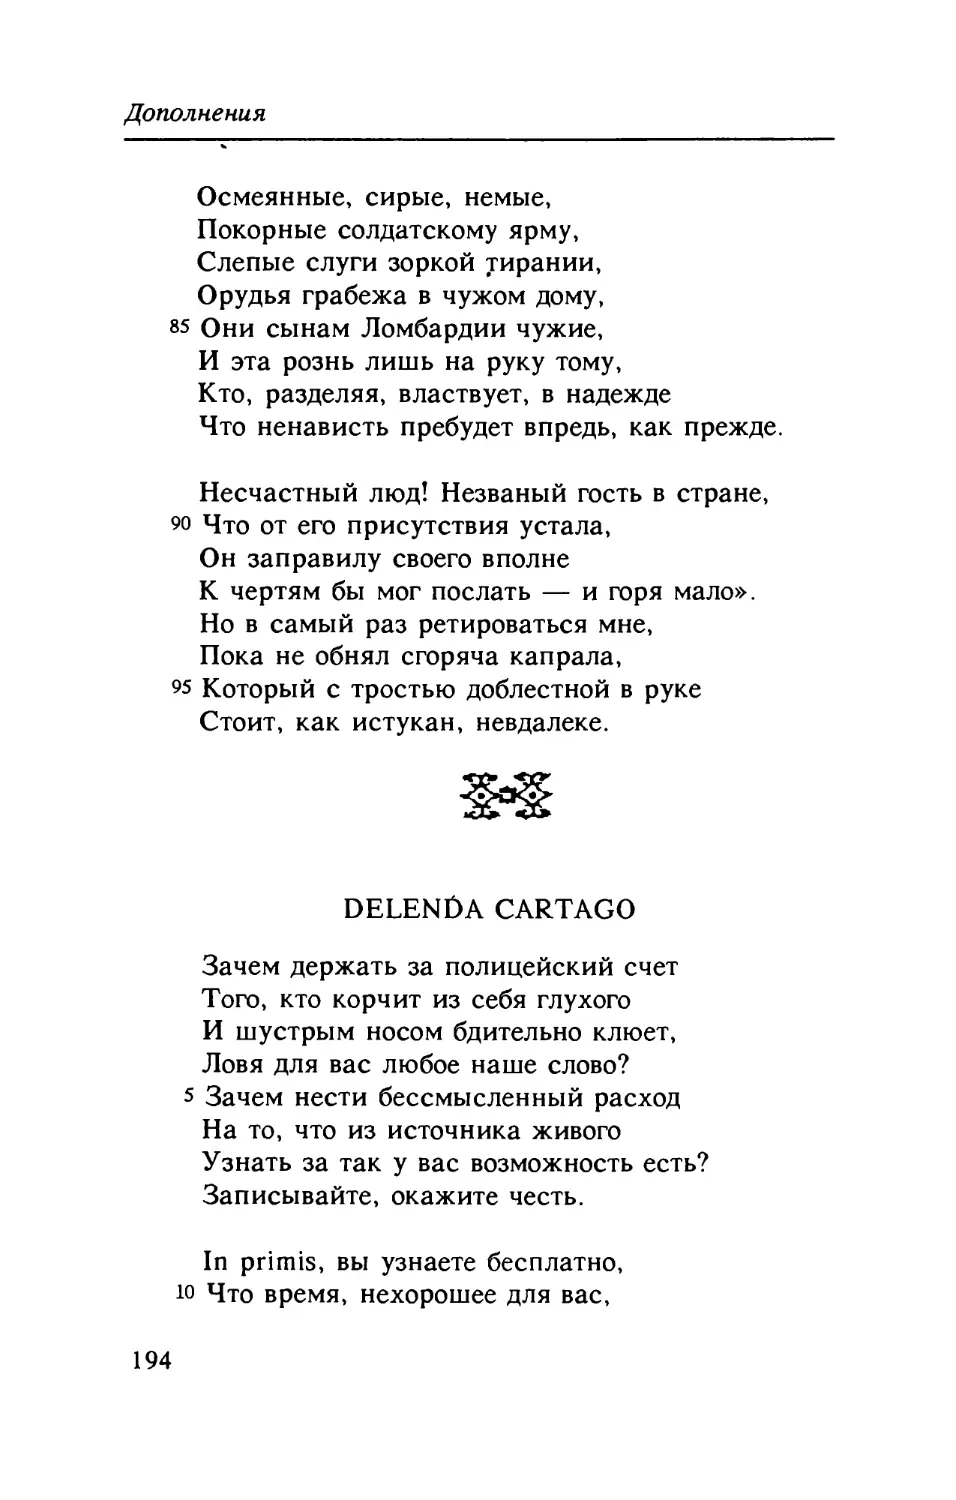 Delenda Cartago. Перевод E. Солоновича